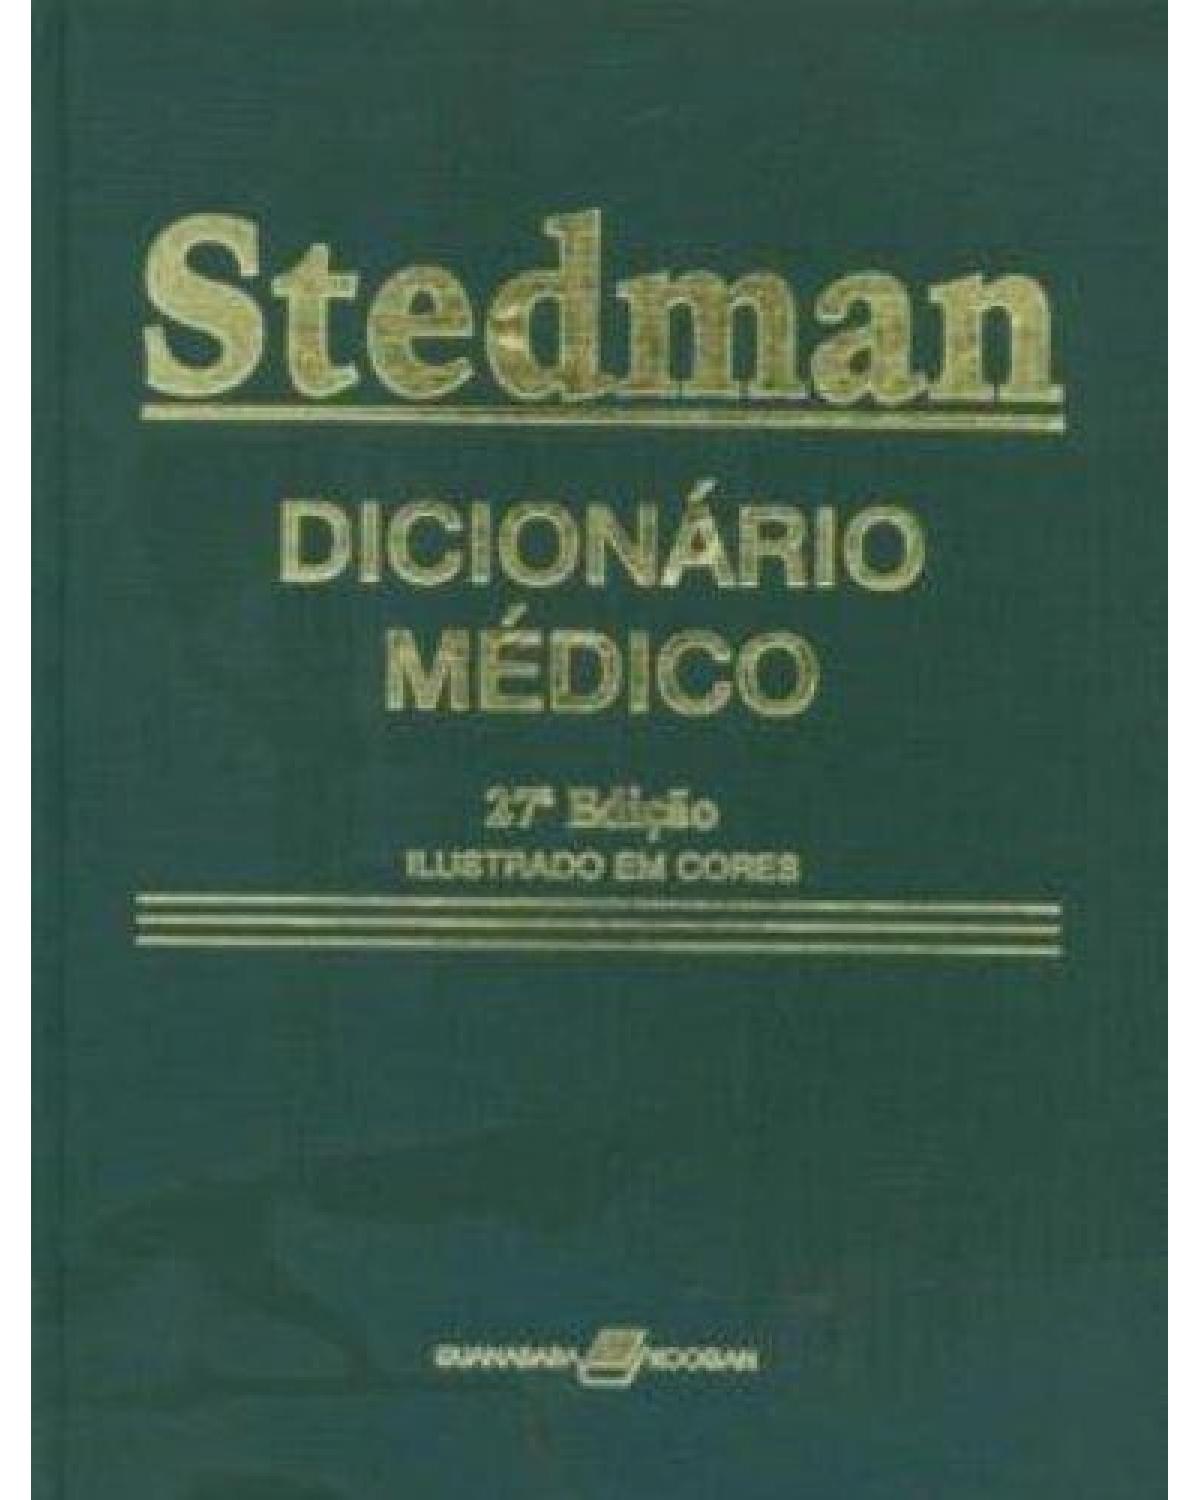 Stedman - Dicionário médico - 27ª Edição | 2003